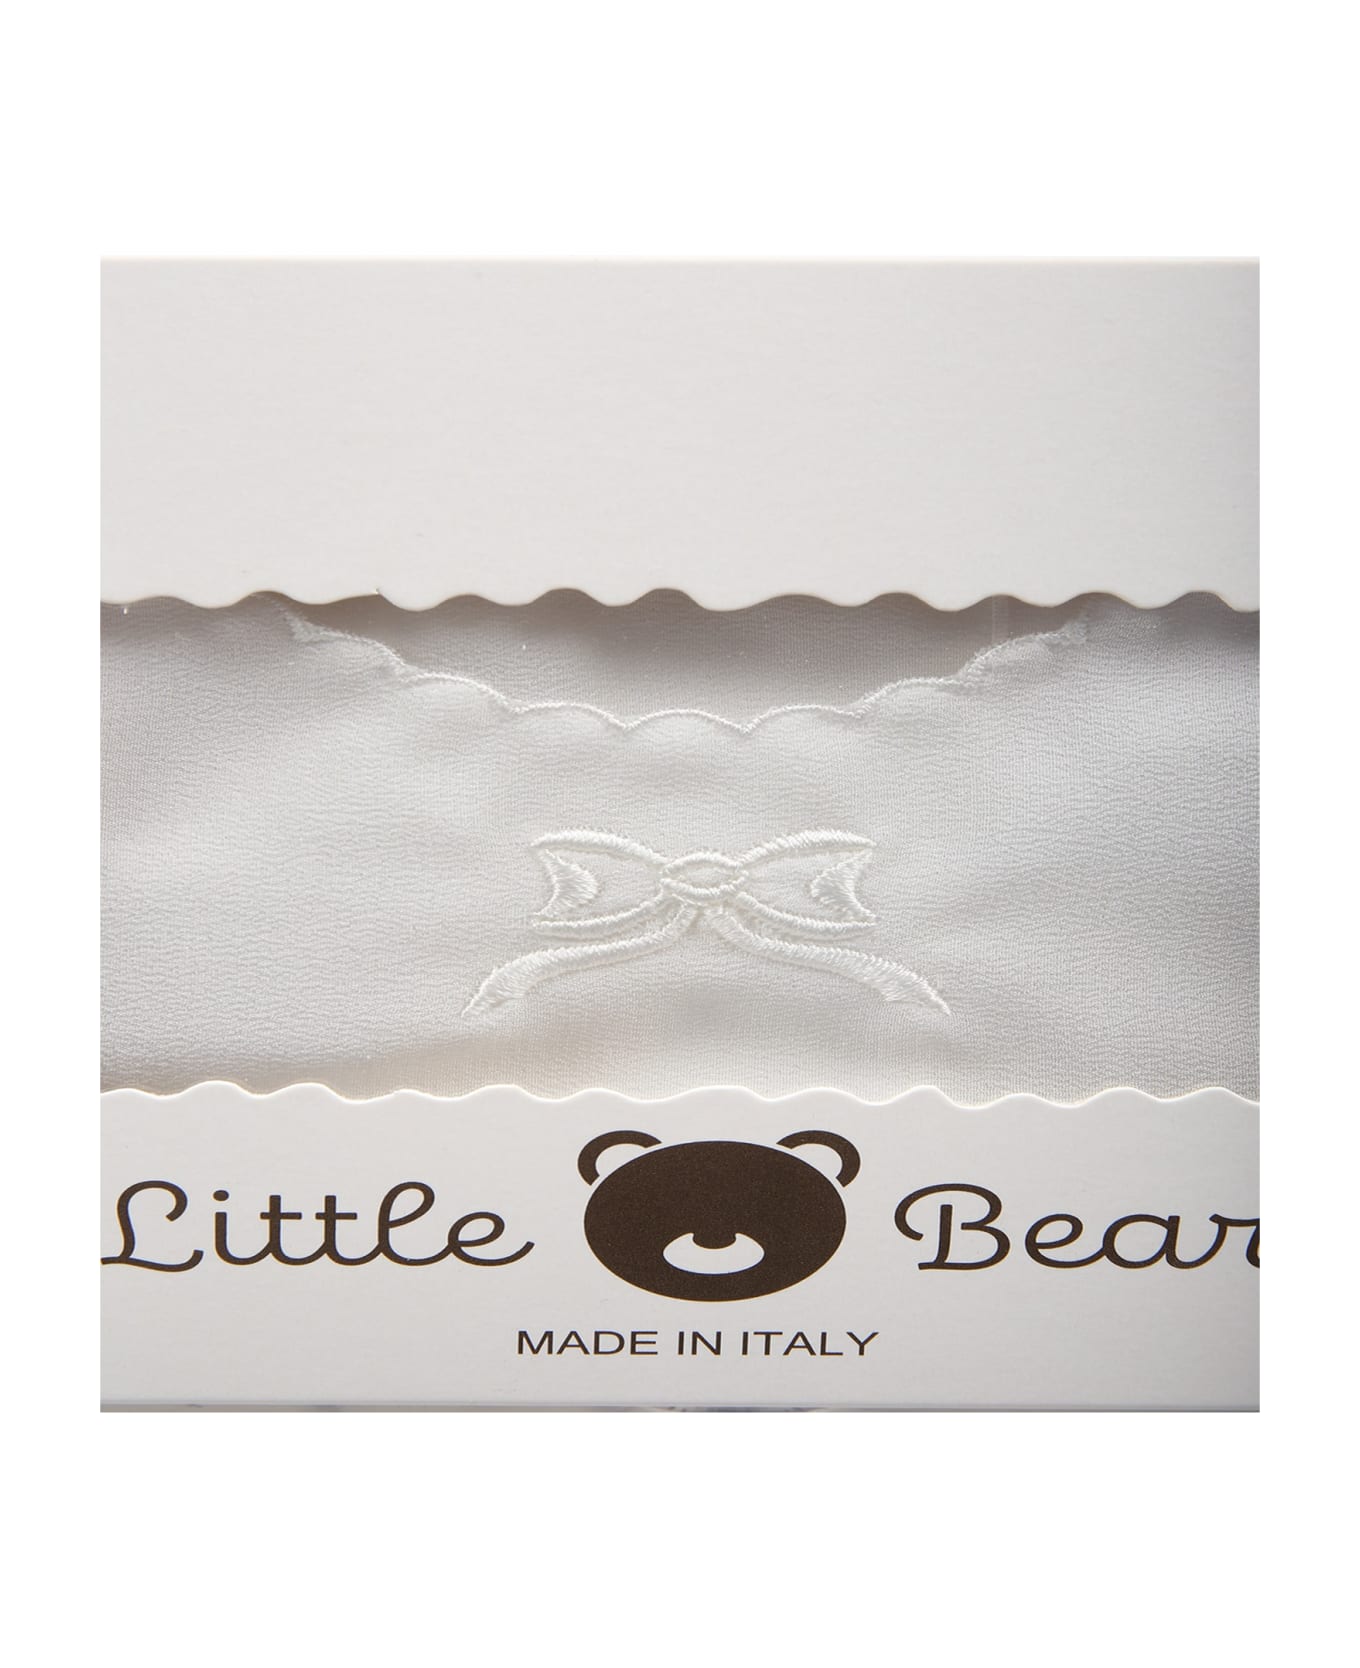 Little Bear Ivory Good-luck Newborn Shirt With Bow For Babykids - Ivory